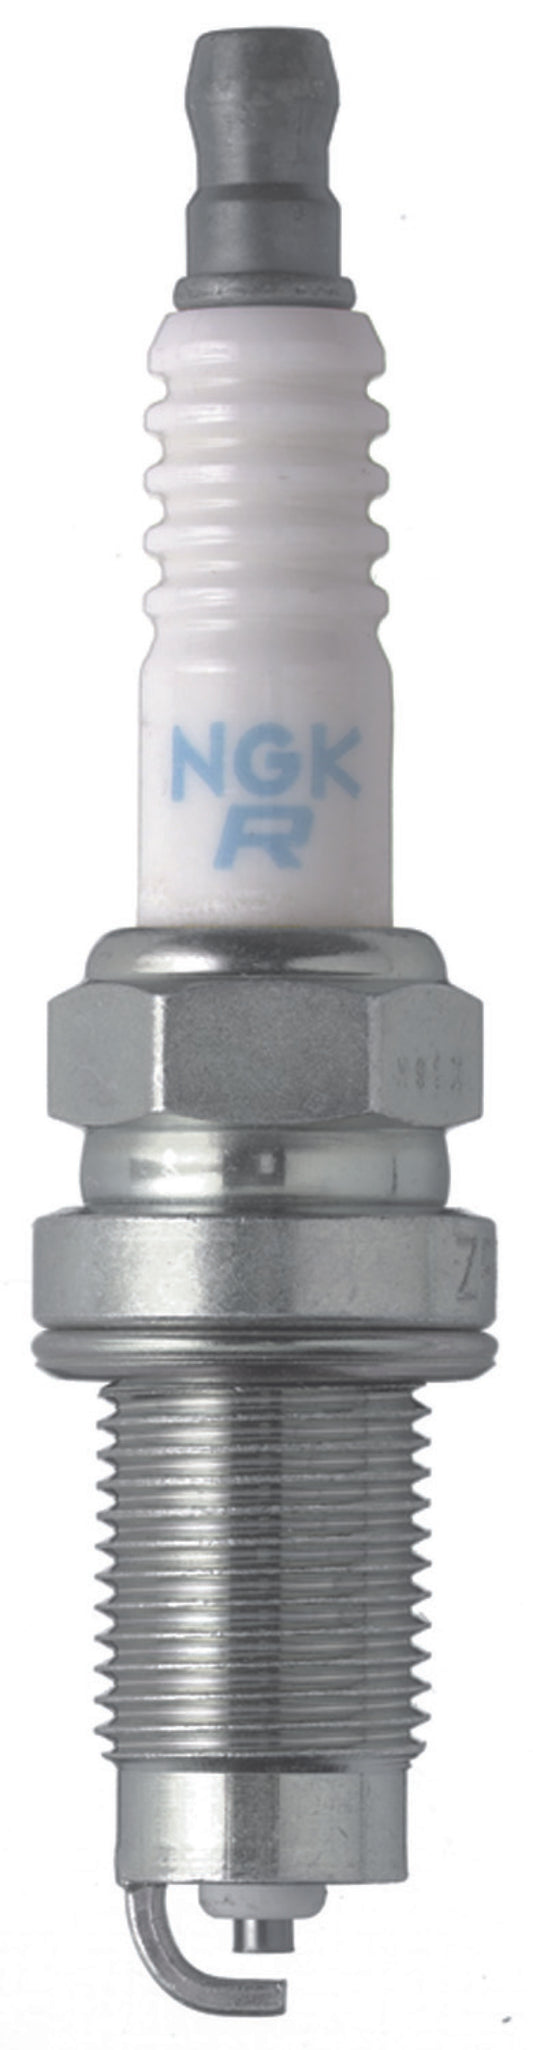 NGK Standard Spark Plug Box of 4 (ZFR5D-11)